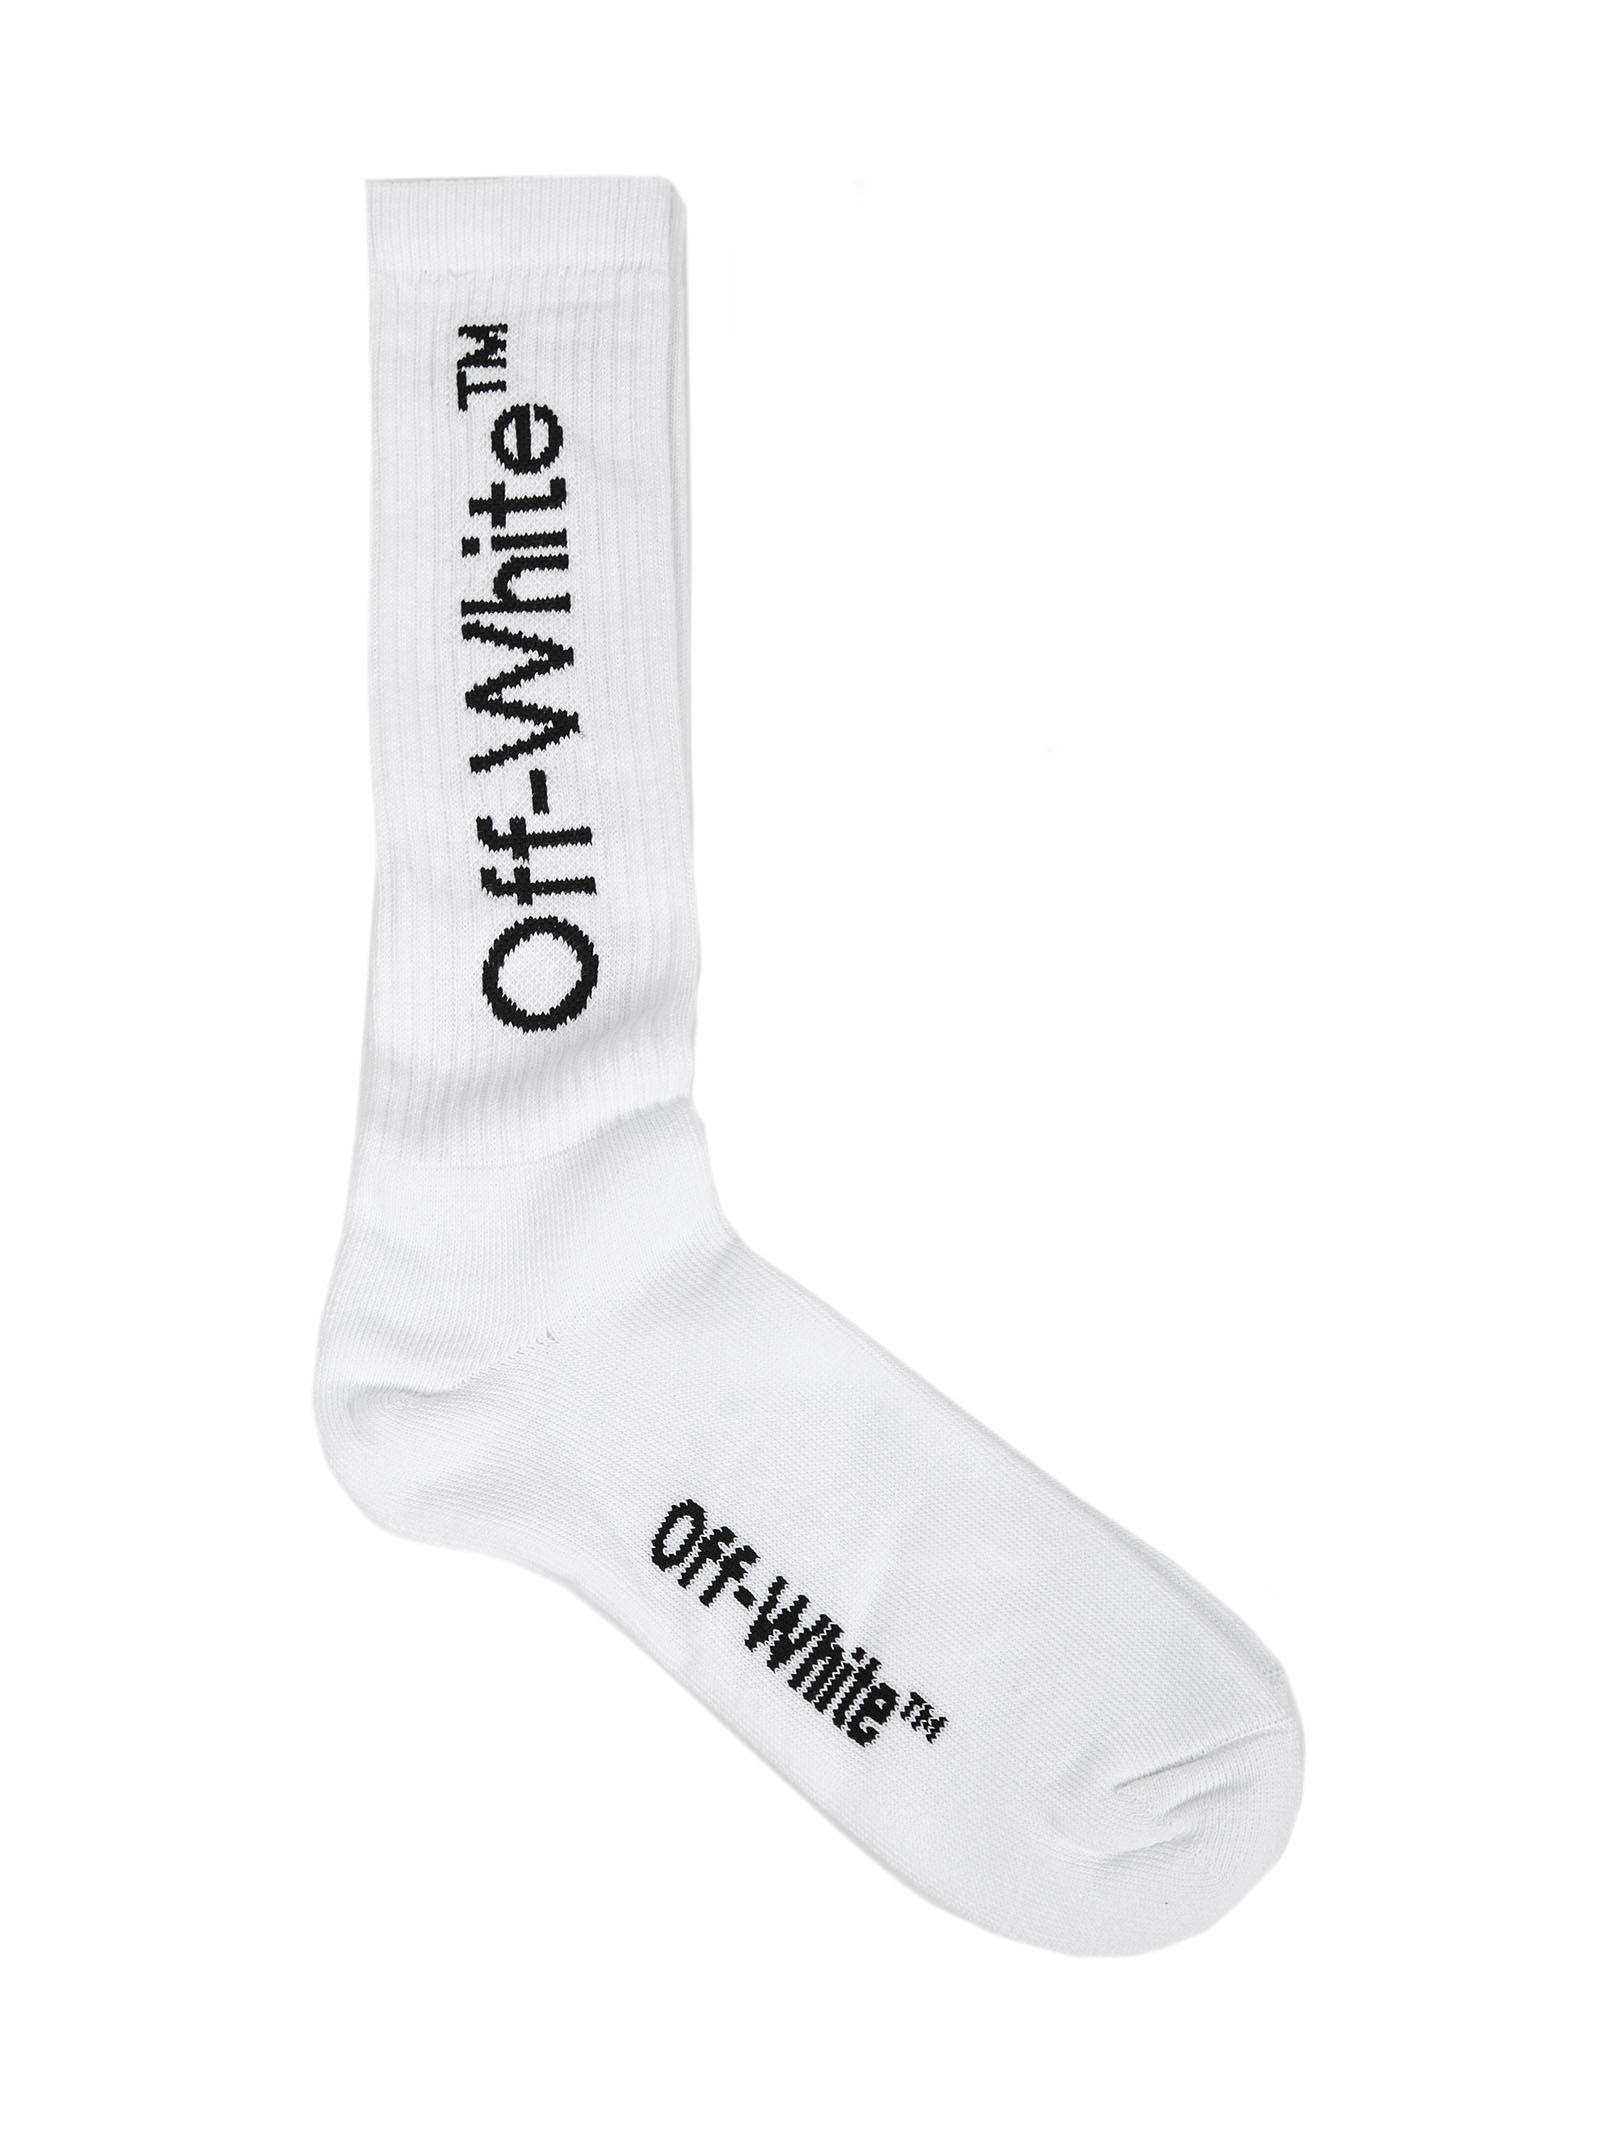 Off-White c/o Virgil Abloh Cotton Socks in White for Men - Lyst